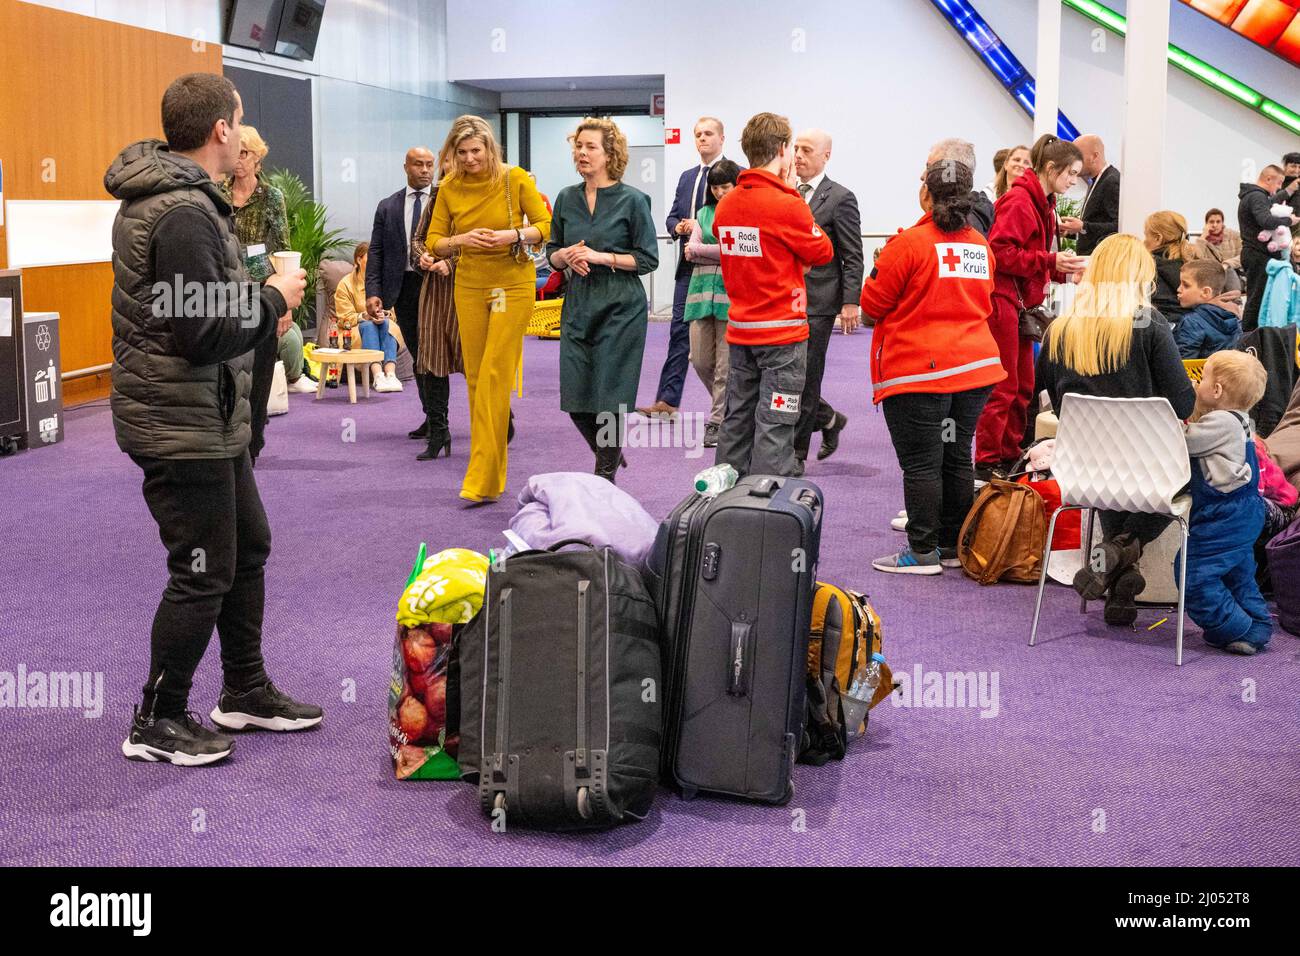 AMSTERDAM - Koningin Maxima bezoekt de opvang voor Oekraiense vluchtelingen  in de RAI. In het evenementencomplex is een doorstroomlocatie ingericht  waar vluchtelingen worden ontvangen. ANP POOL MISCHA SCHOEMAKER Foto stock  - Alamy